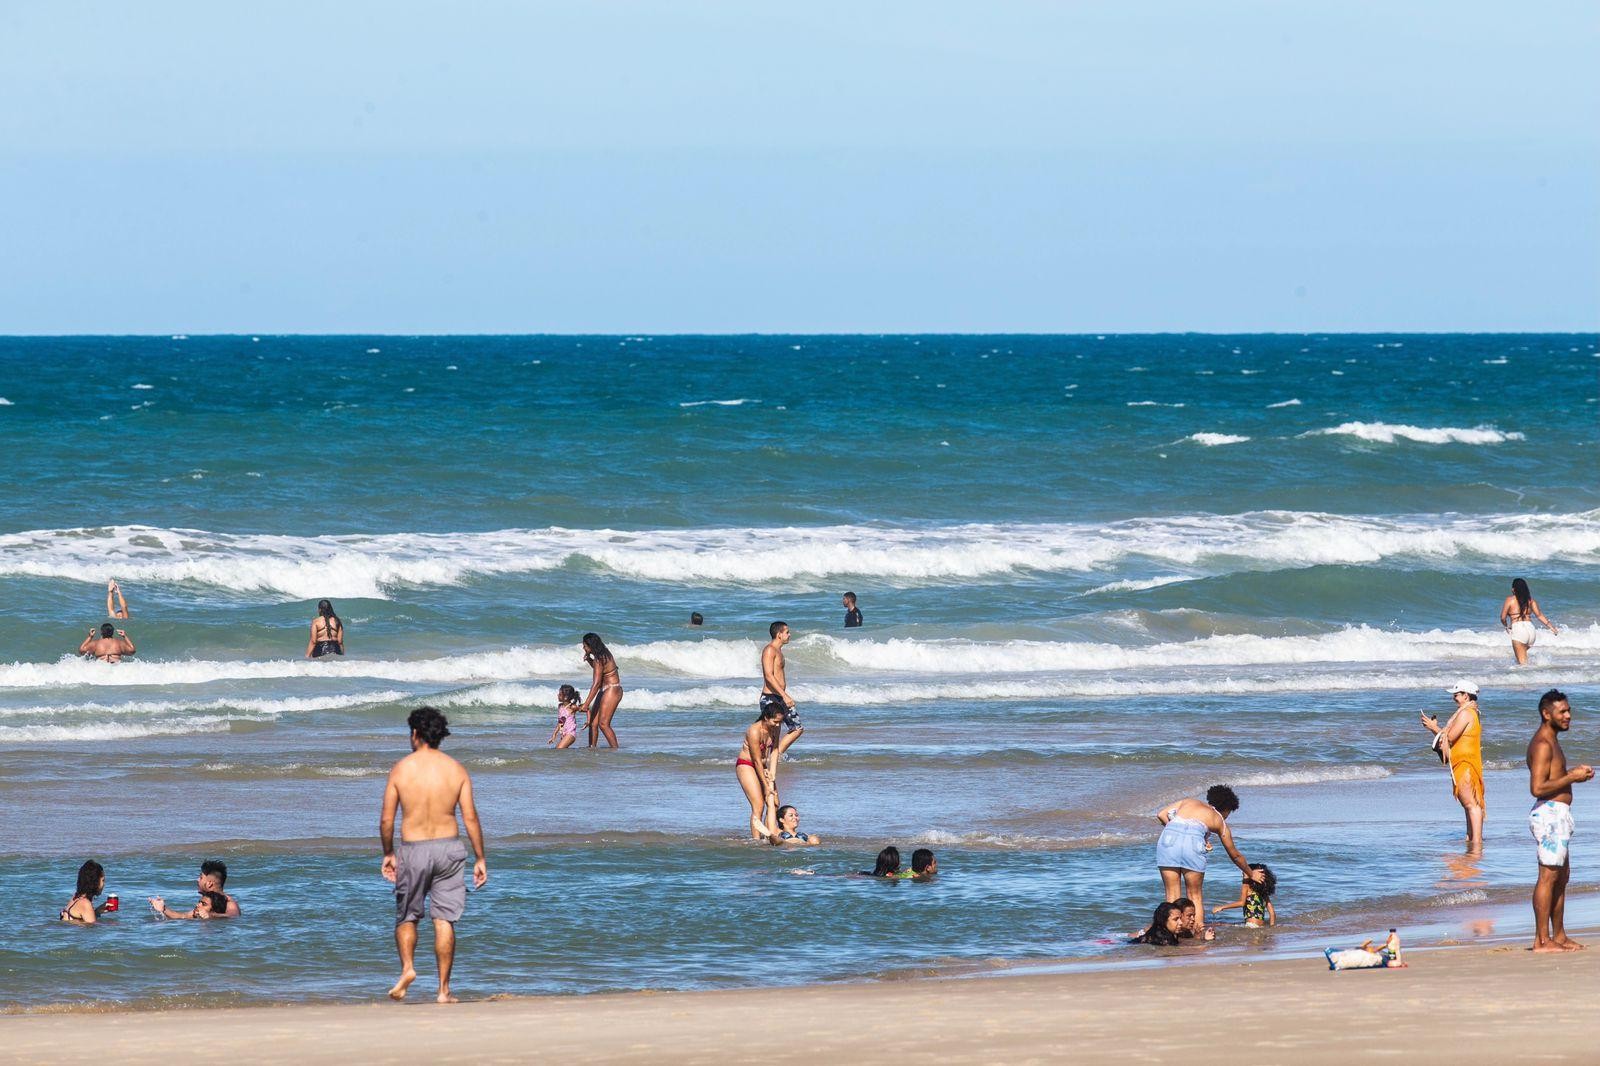 13 trechos de praia estão próprios para banho neste fim de semana em Fortaleza; saiba quais